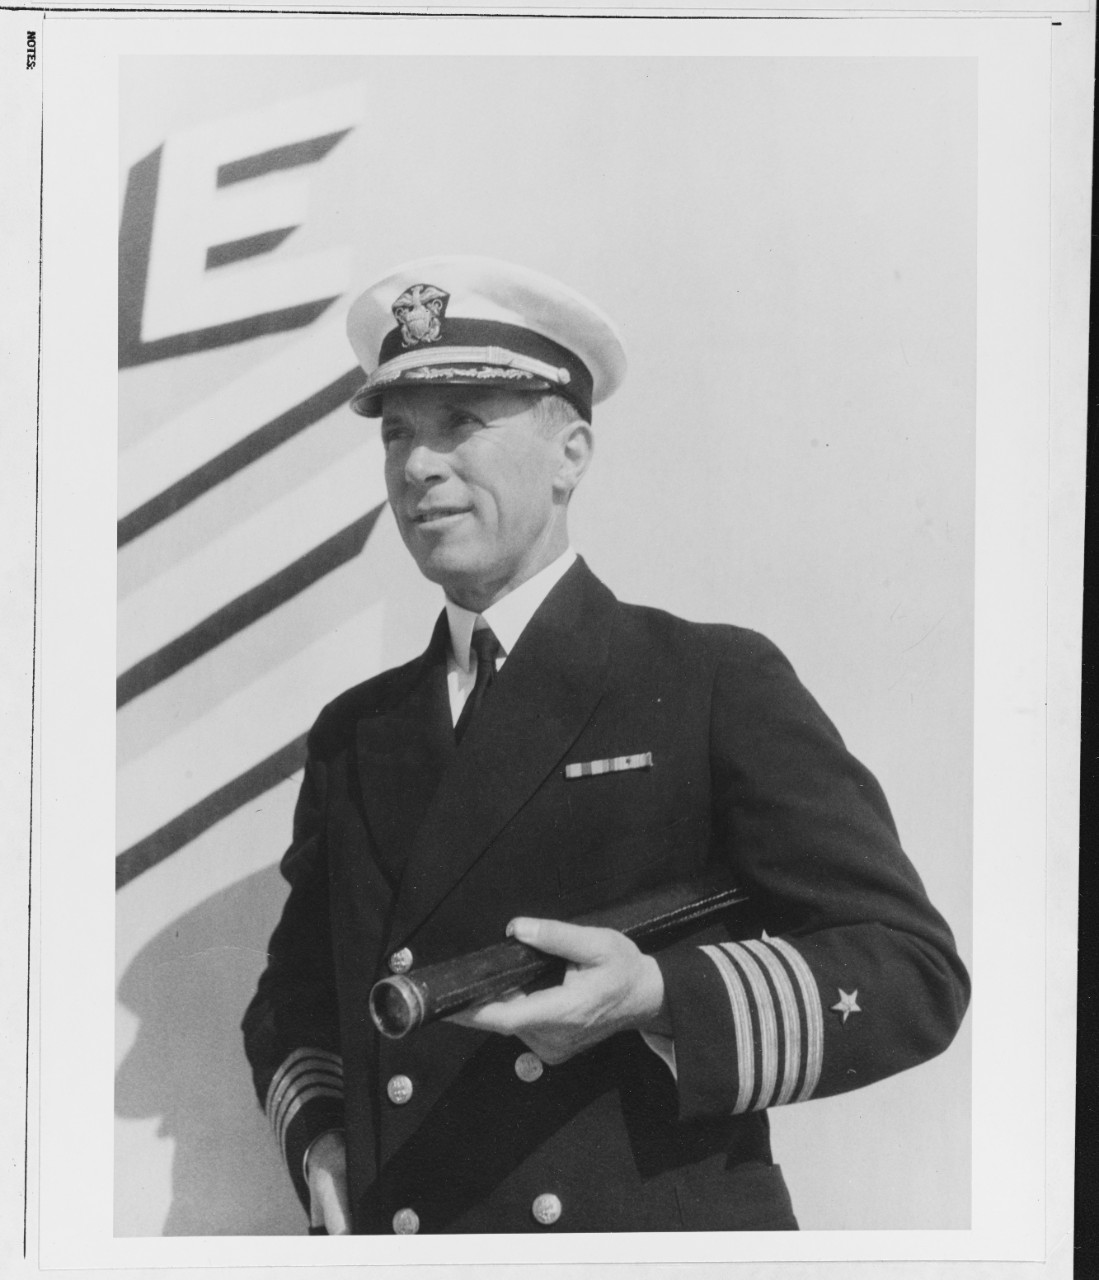 Captain Walter Stratton Anderson, USN